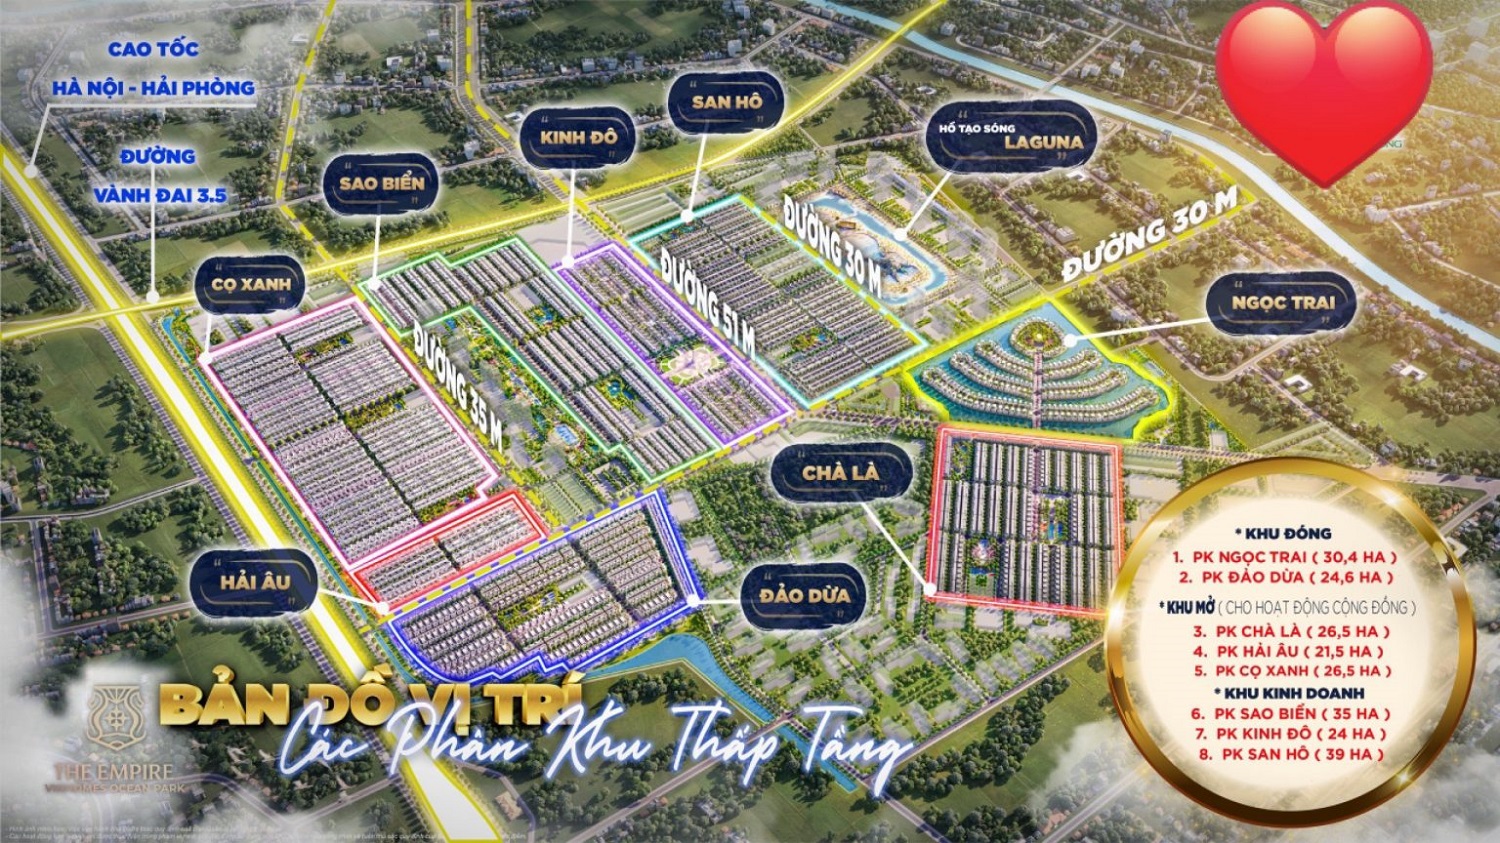 Tổng quan dự án Vinhomes The Empire Văn Giang Hưng Yên được chia làm 8 phân khu chính; mỗi phân khu thiết kế các dòng sản phẩm cao cấp khác nhau